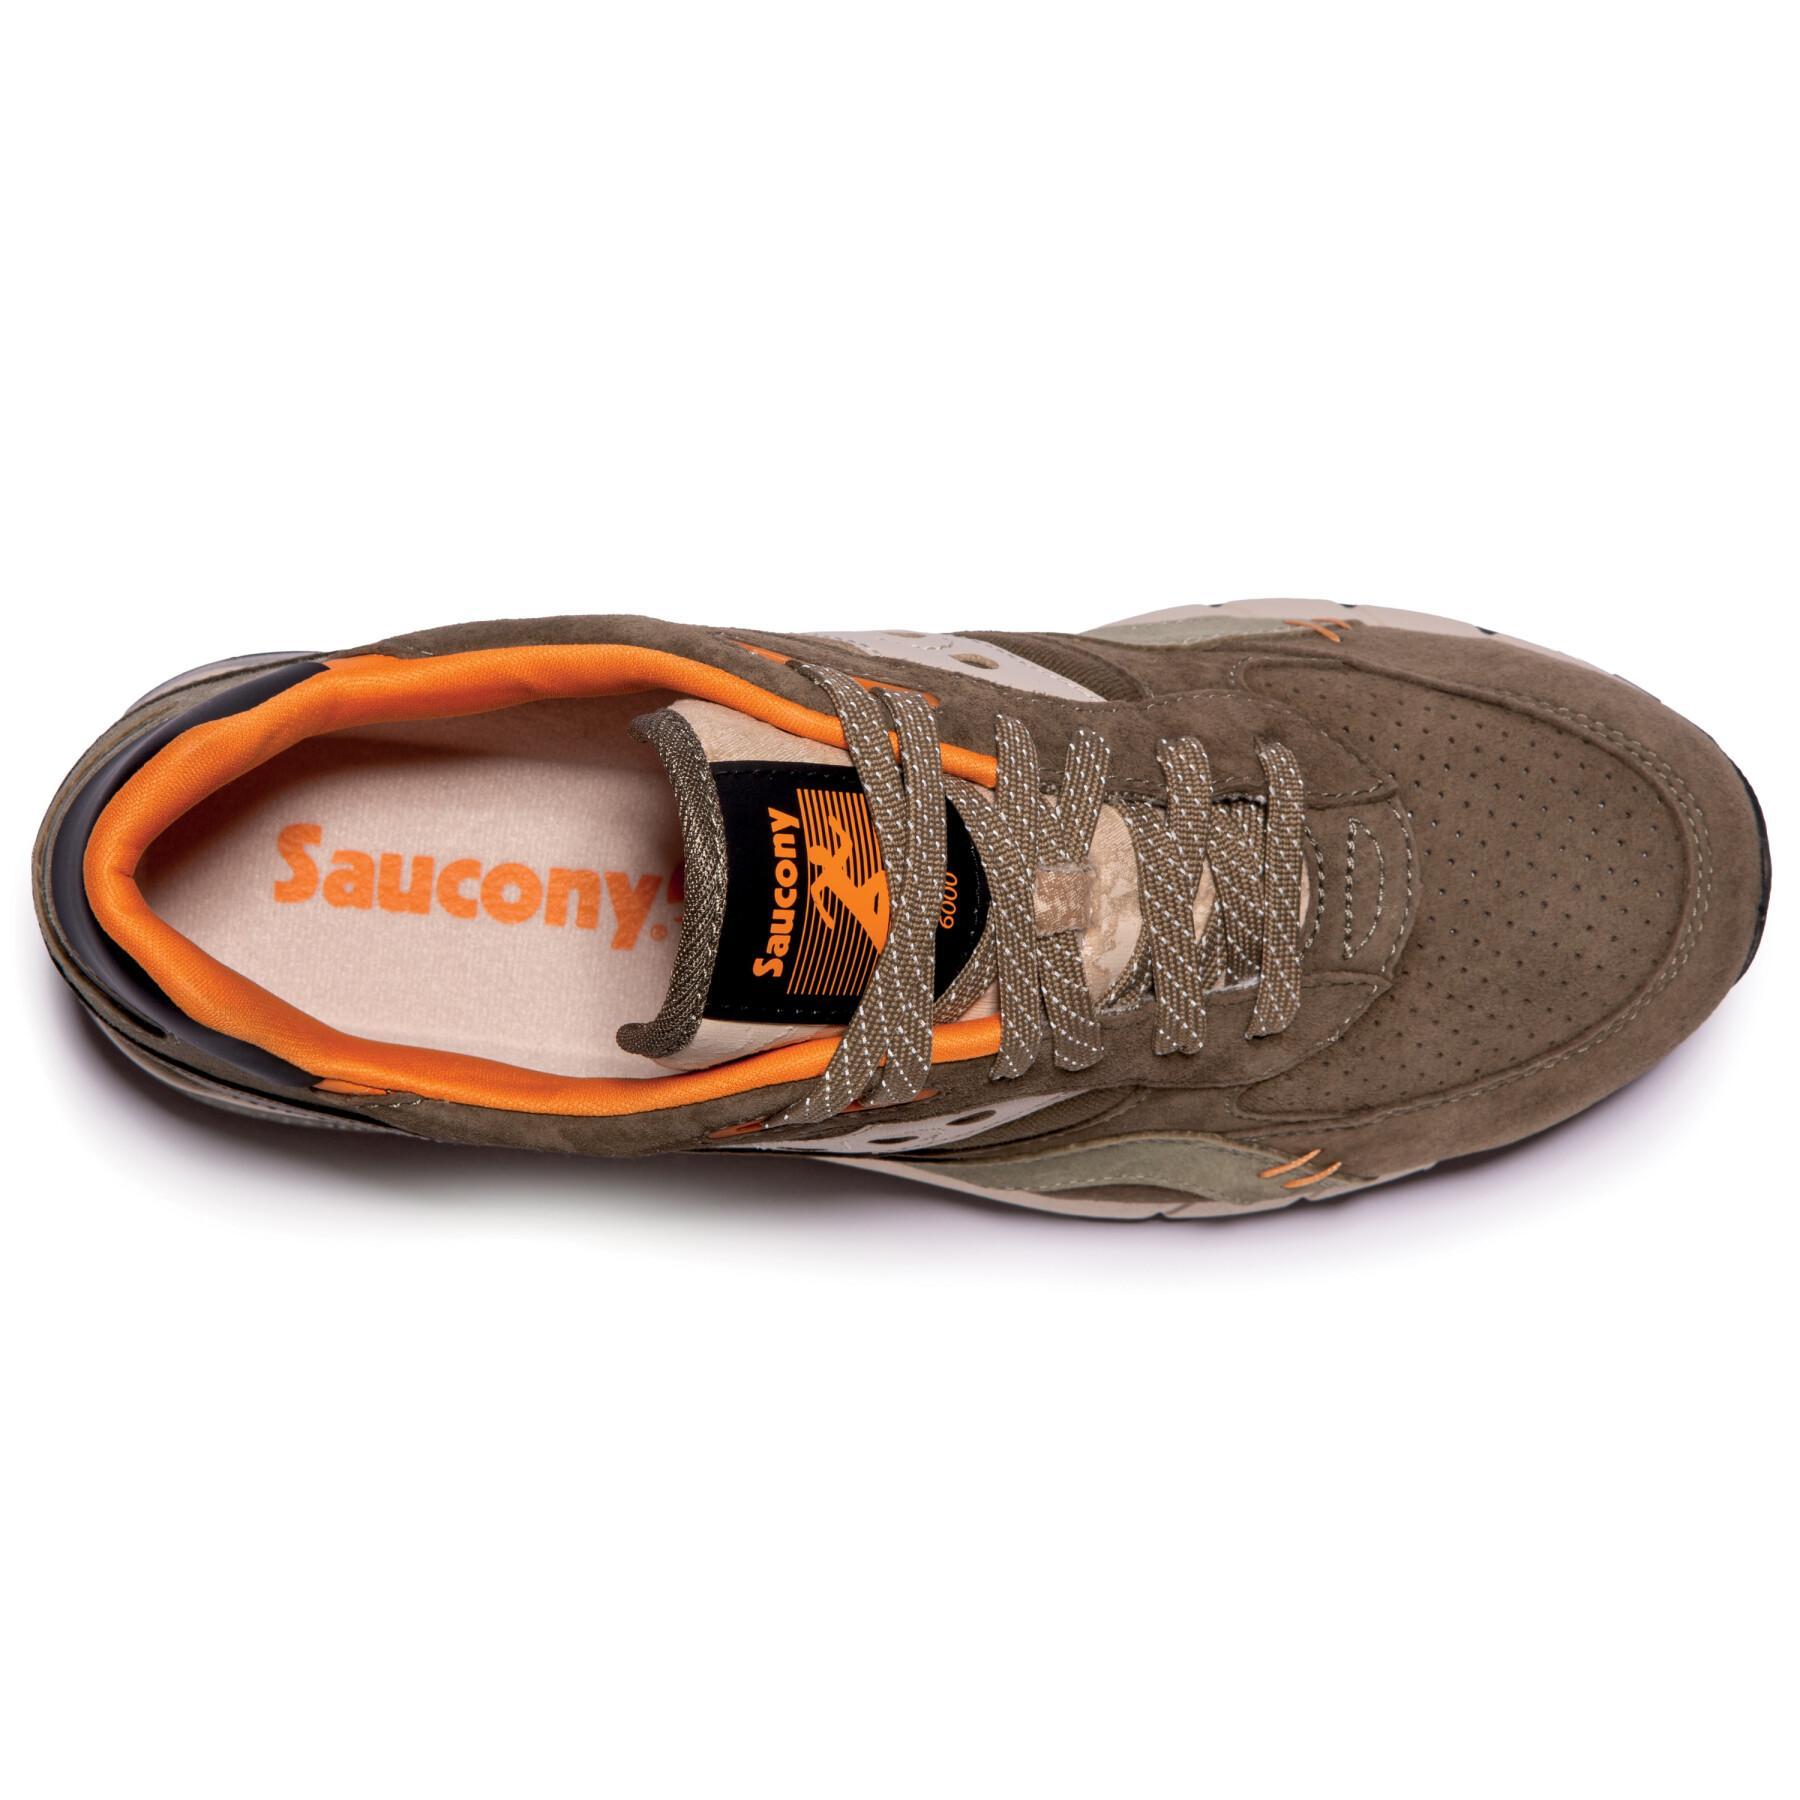 Saucony shadow 6000 schoenen